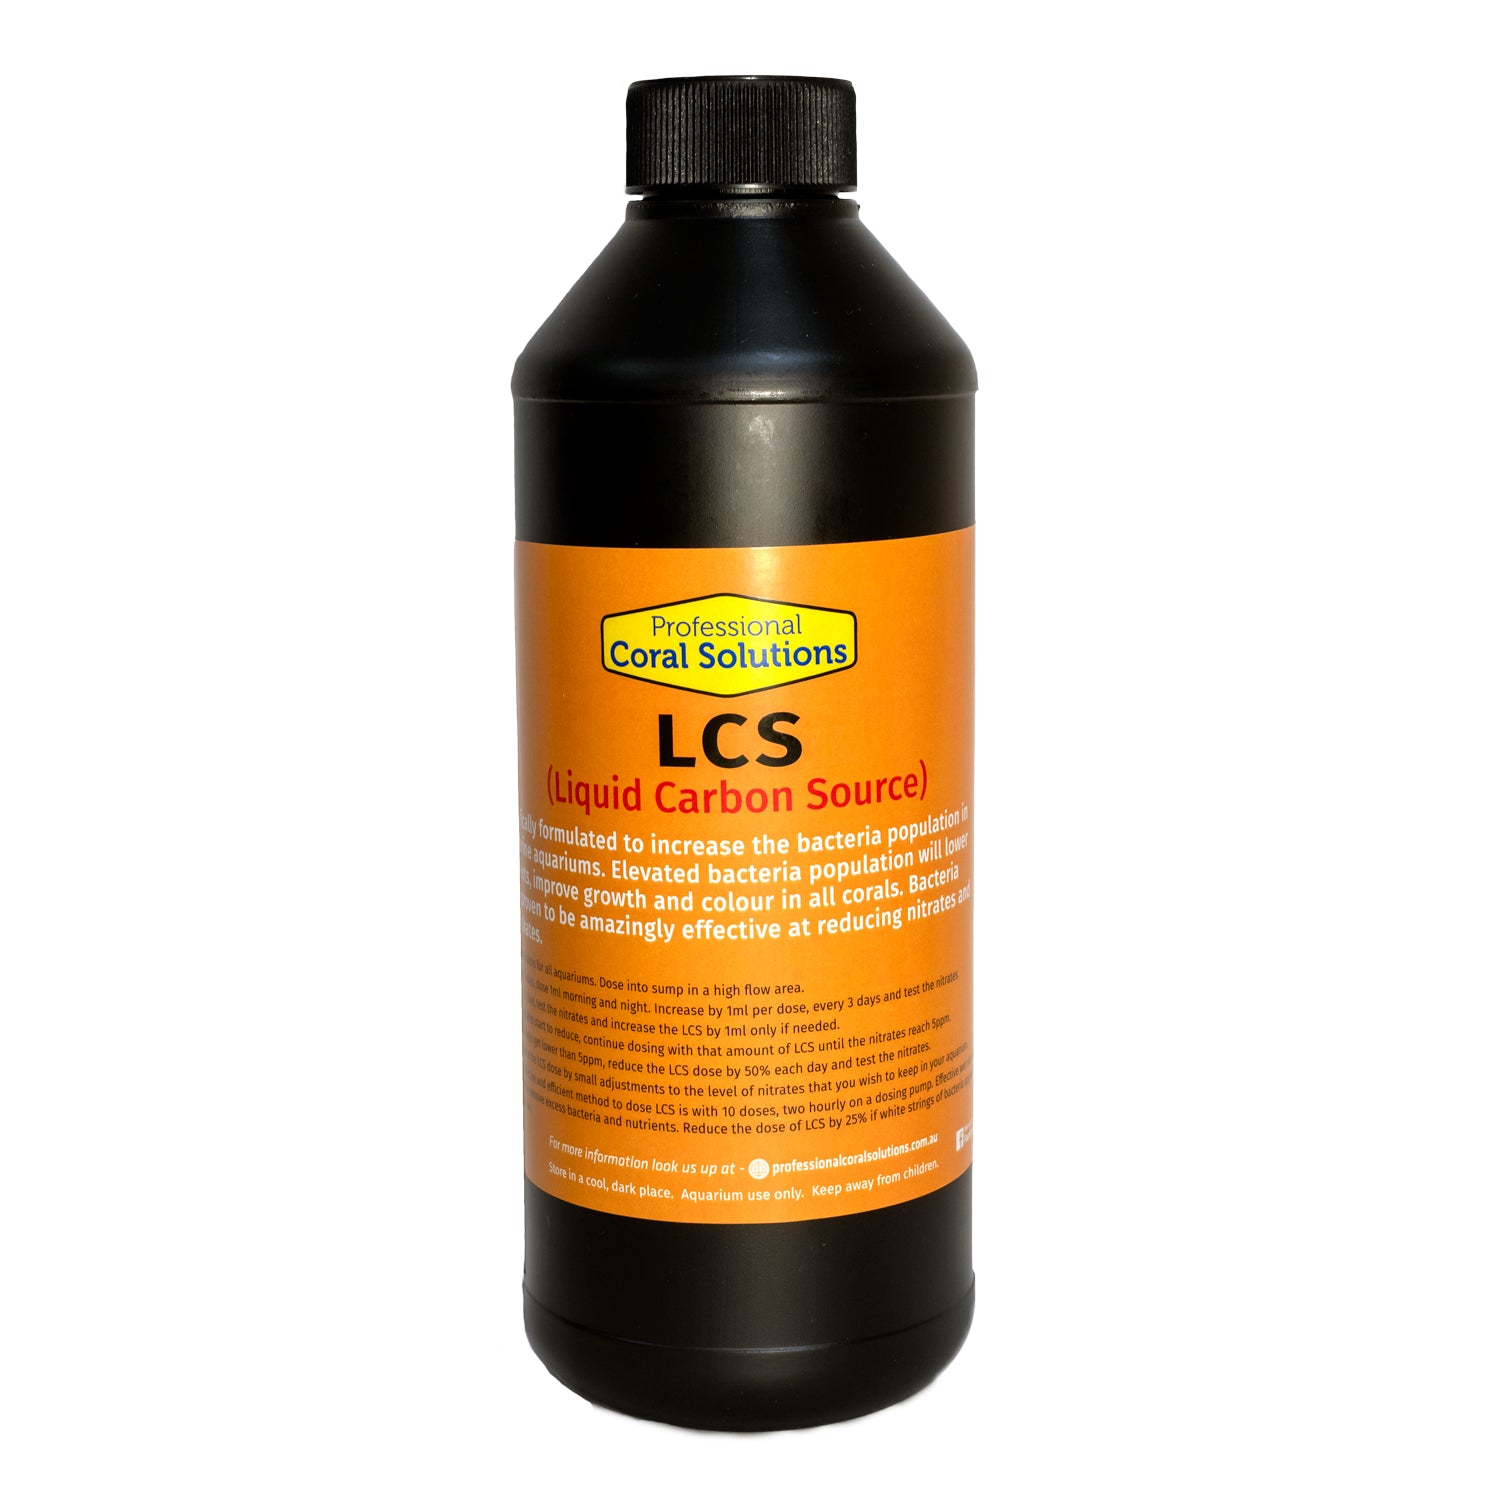 LCS (Liquid Carbon Source)